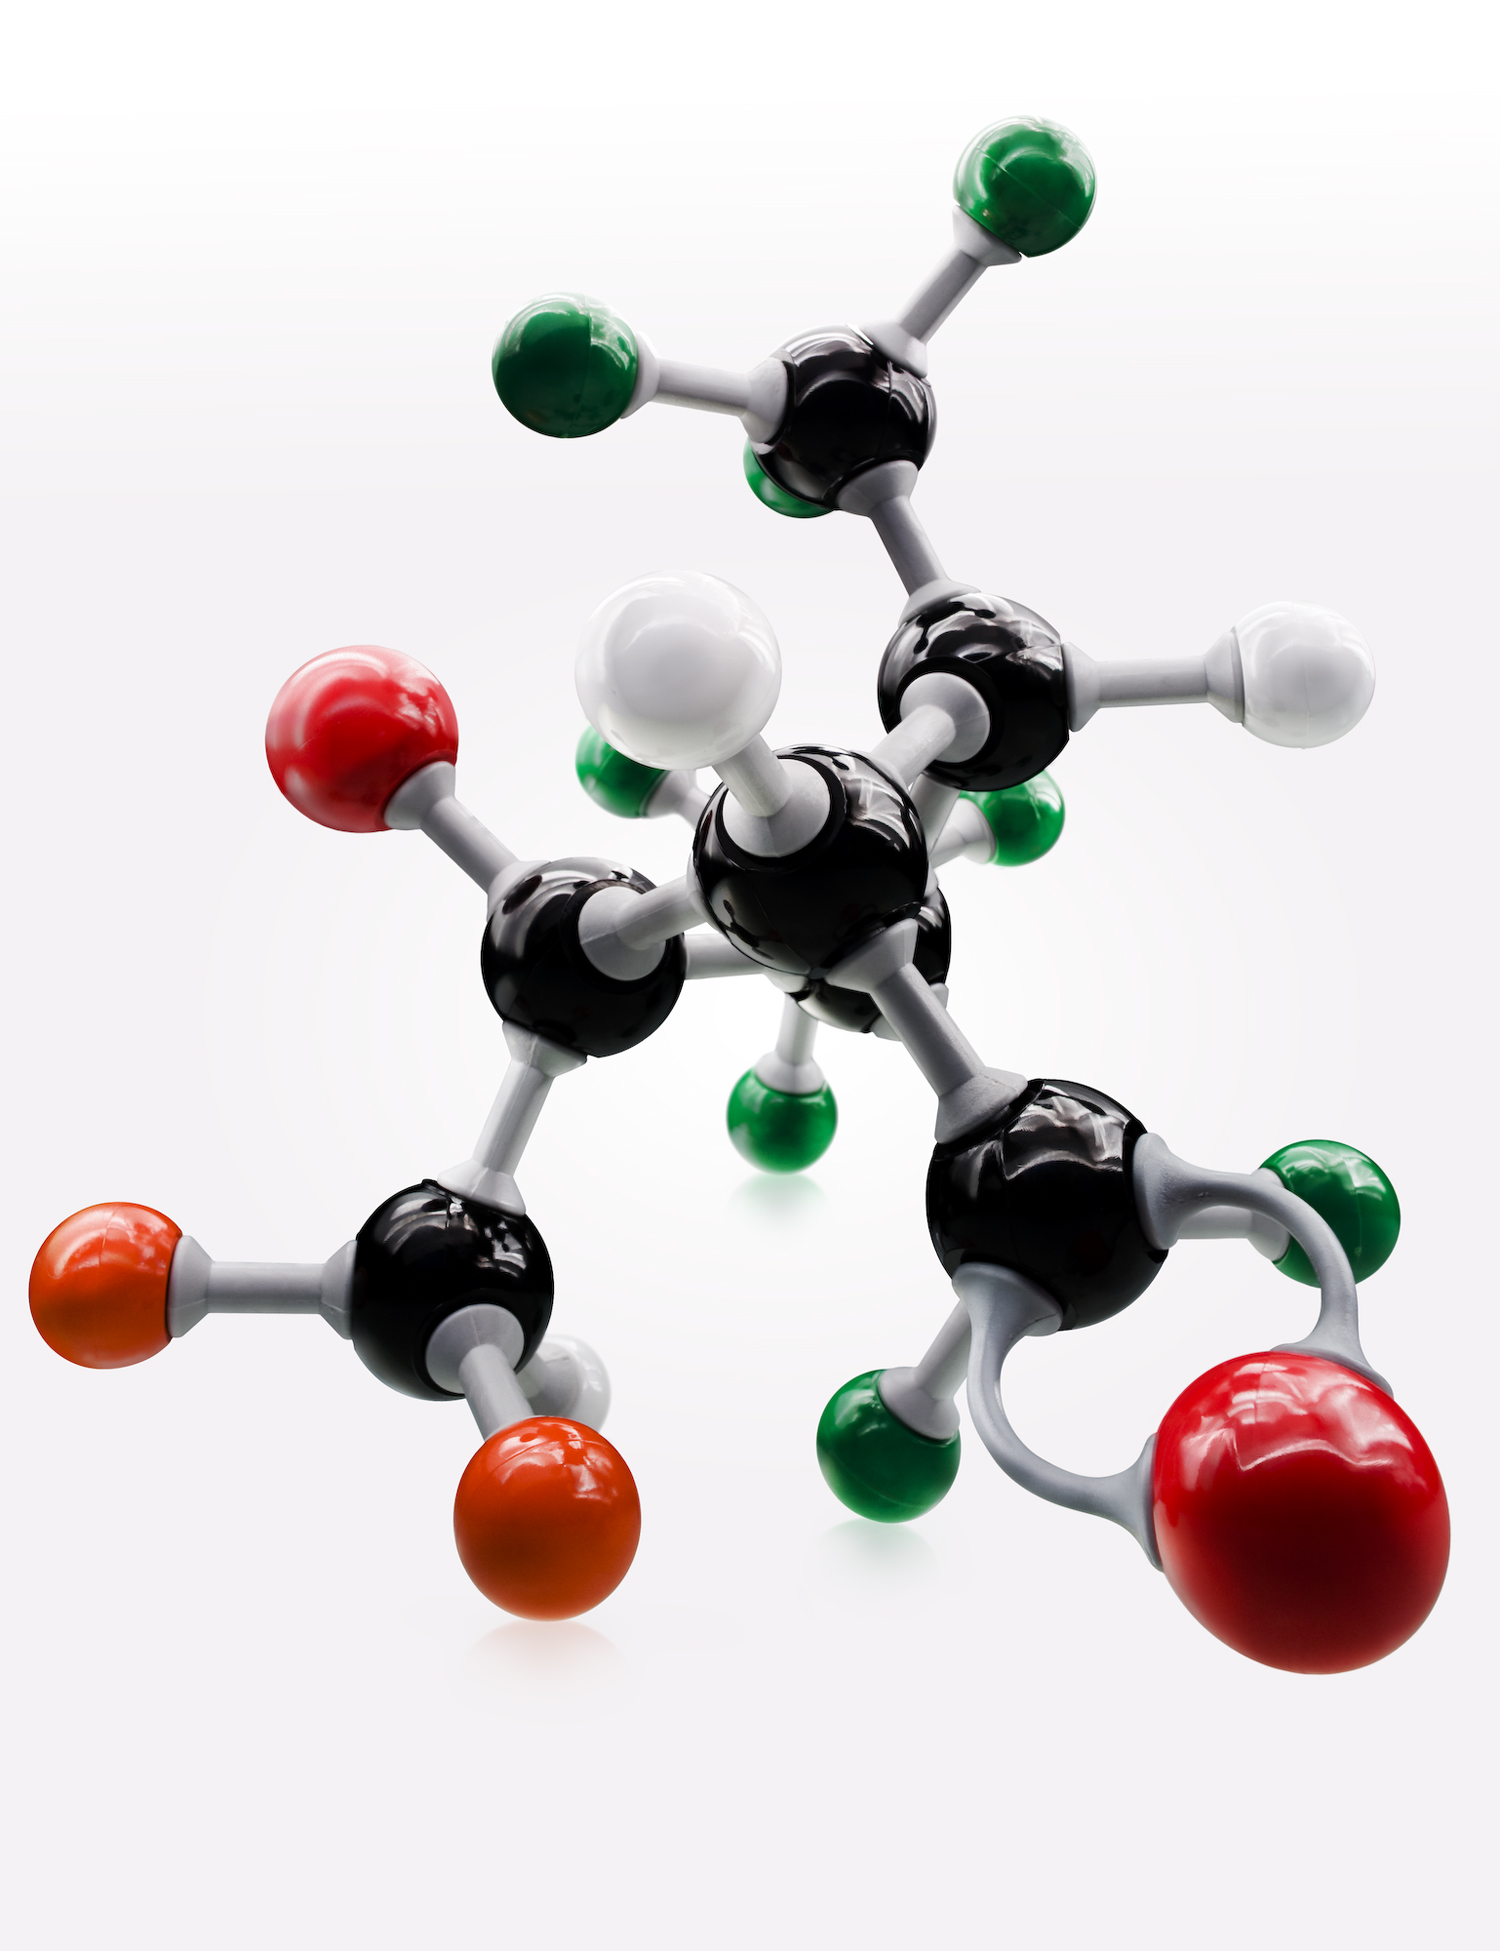 molecule.jpg